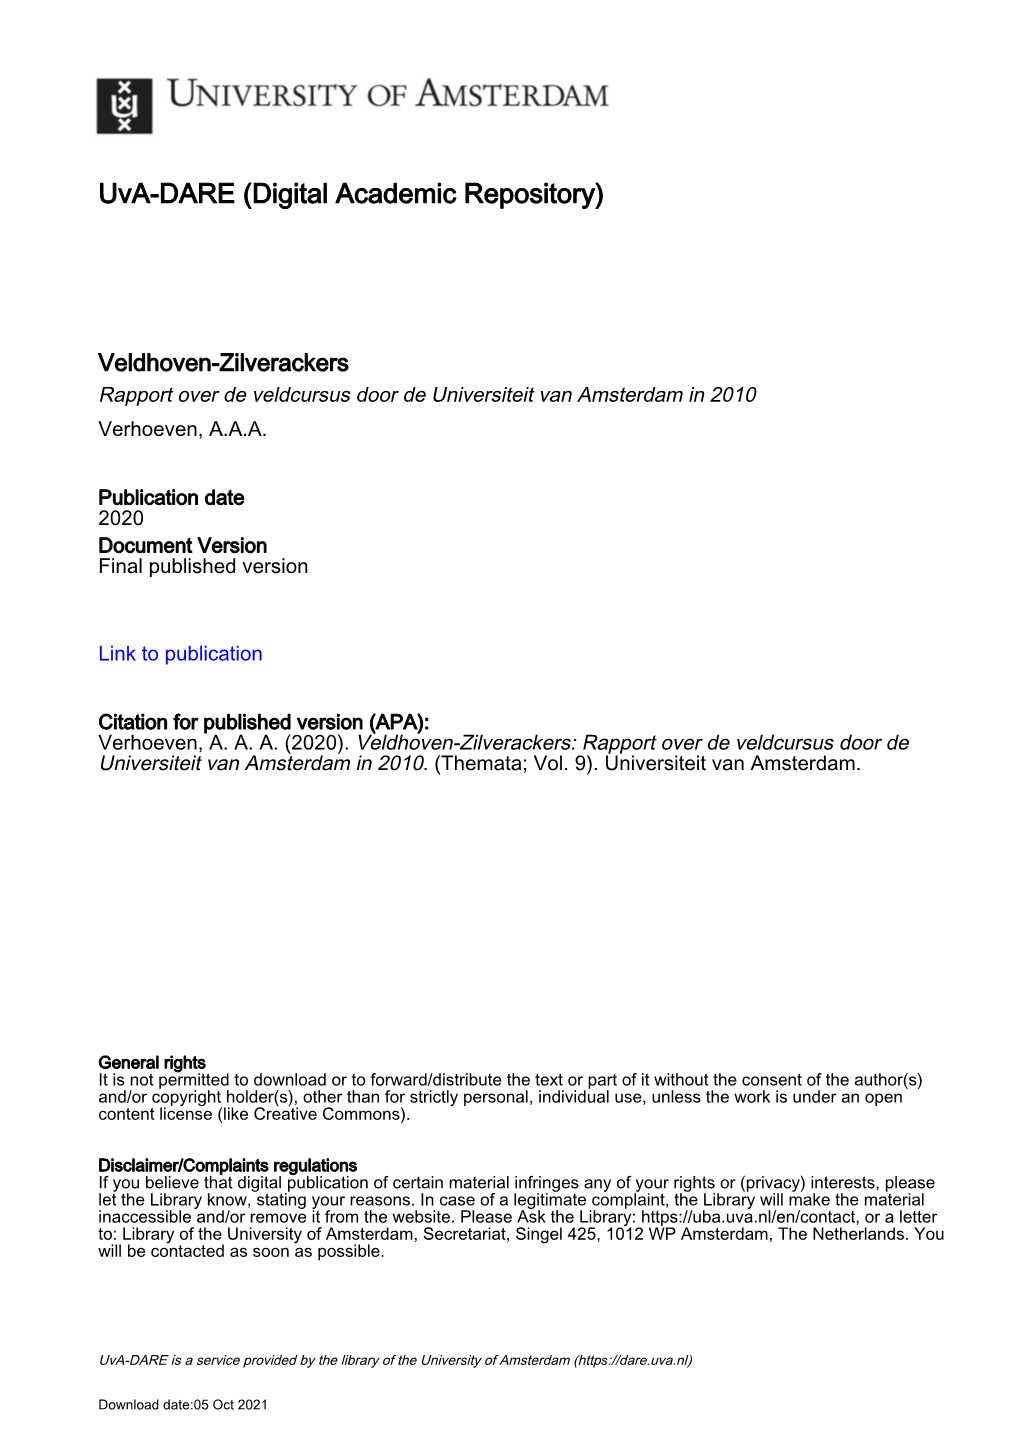 Veldhoven-Zilverackers Rapport Over De Veldcursus Door De Universiteit Van Amsterdam in 2010 Verhoeven, A.A.A